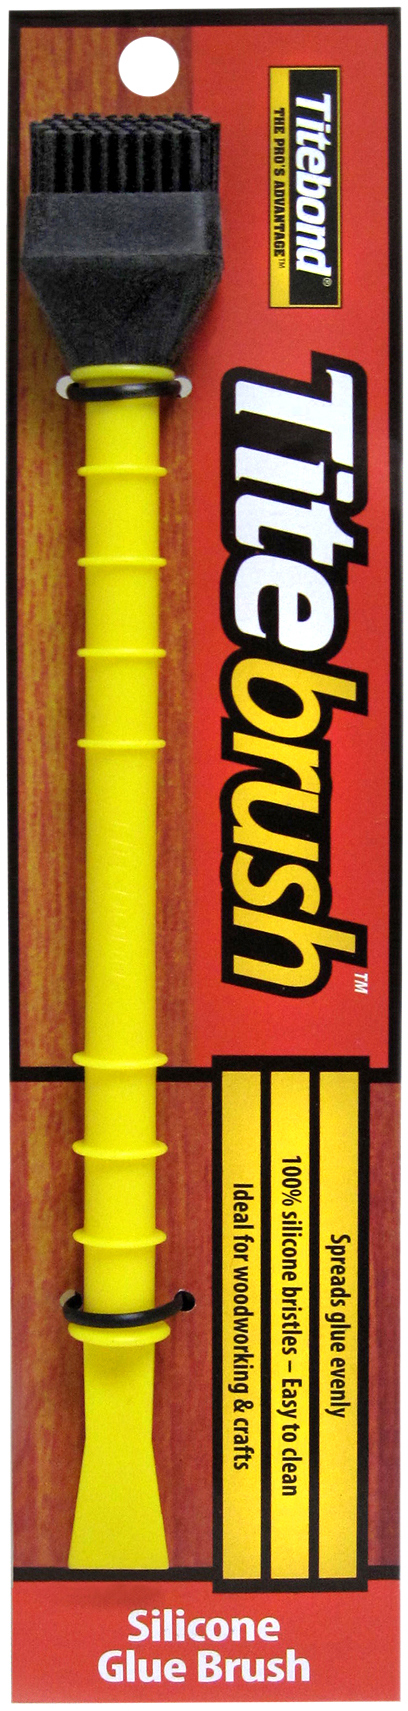 Adhesive - Glue Brush / Spreader - Silicone